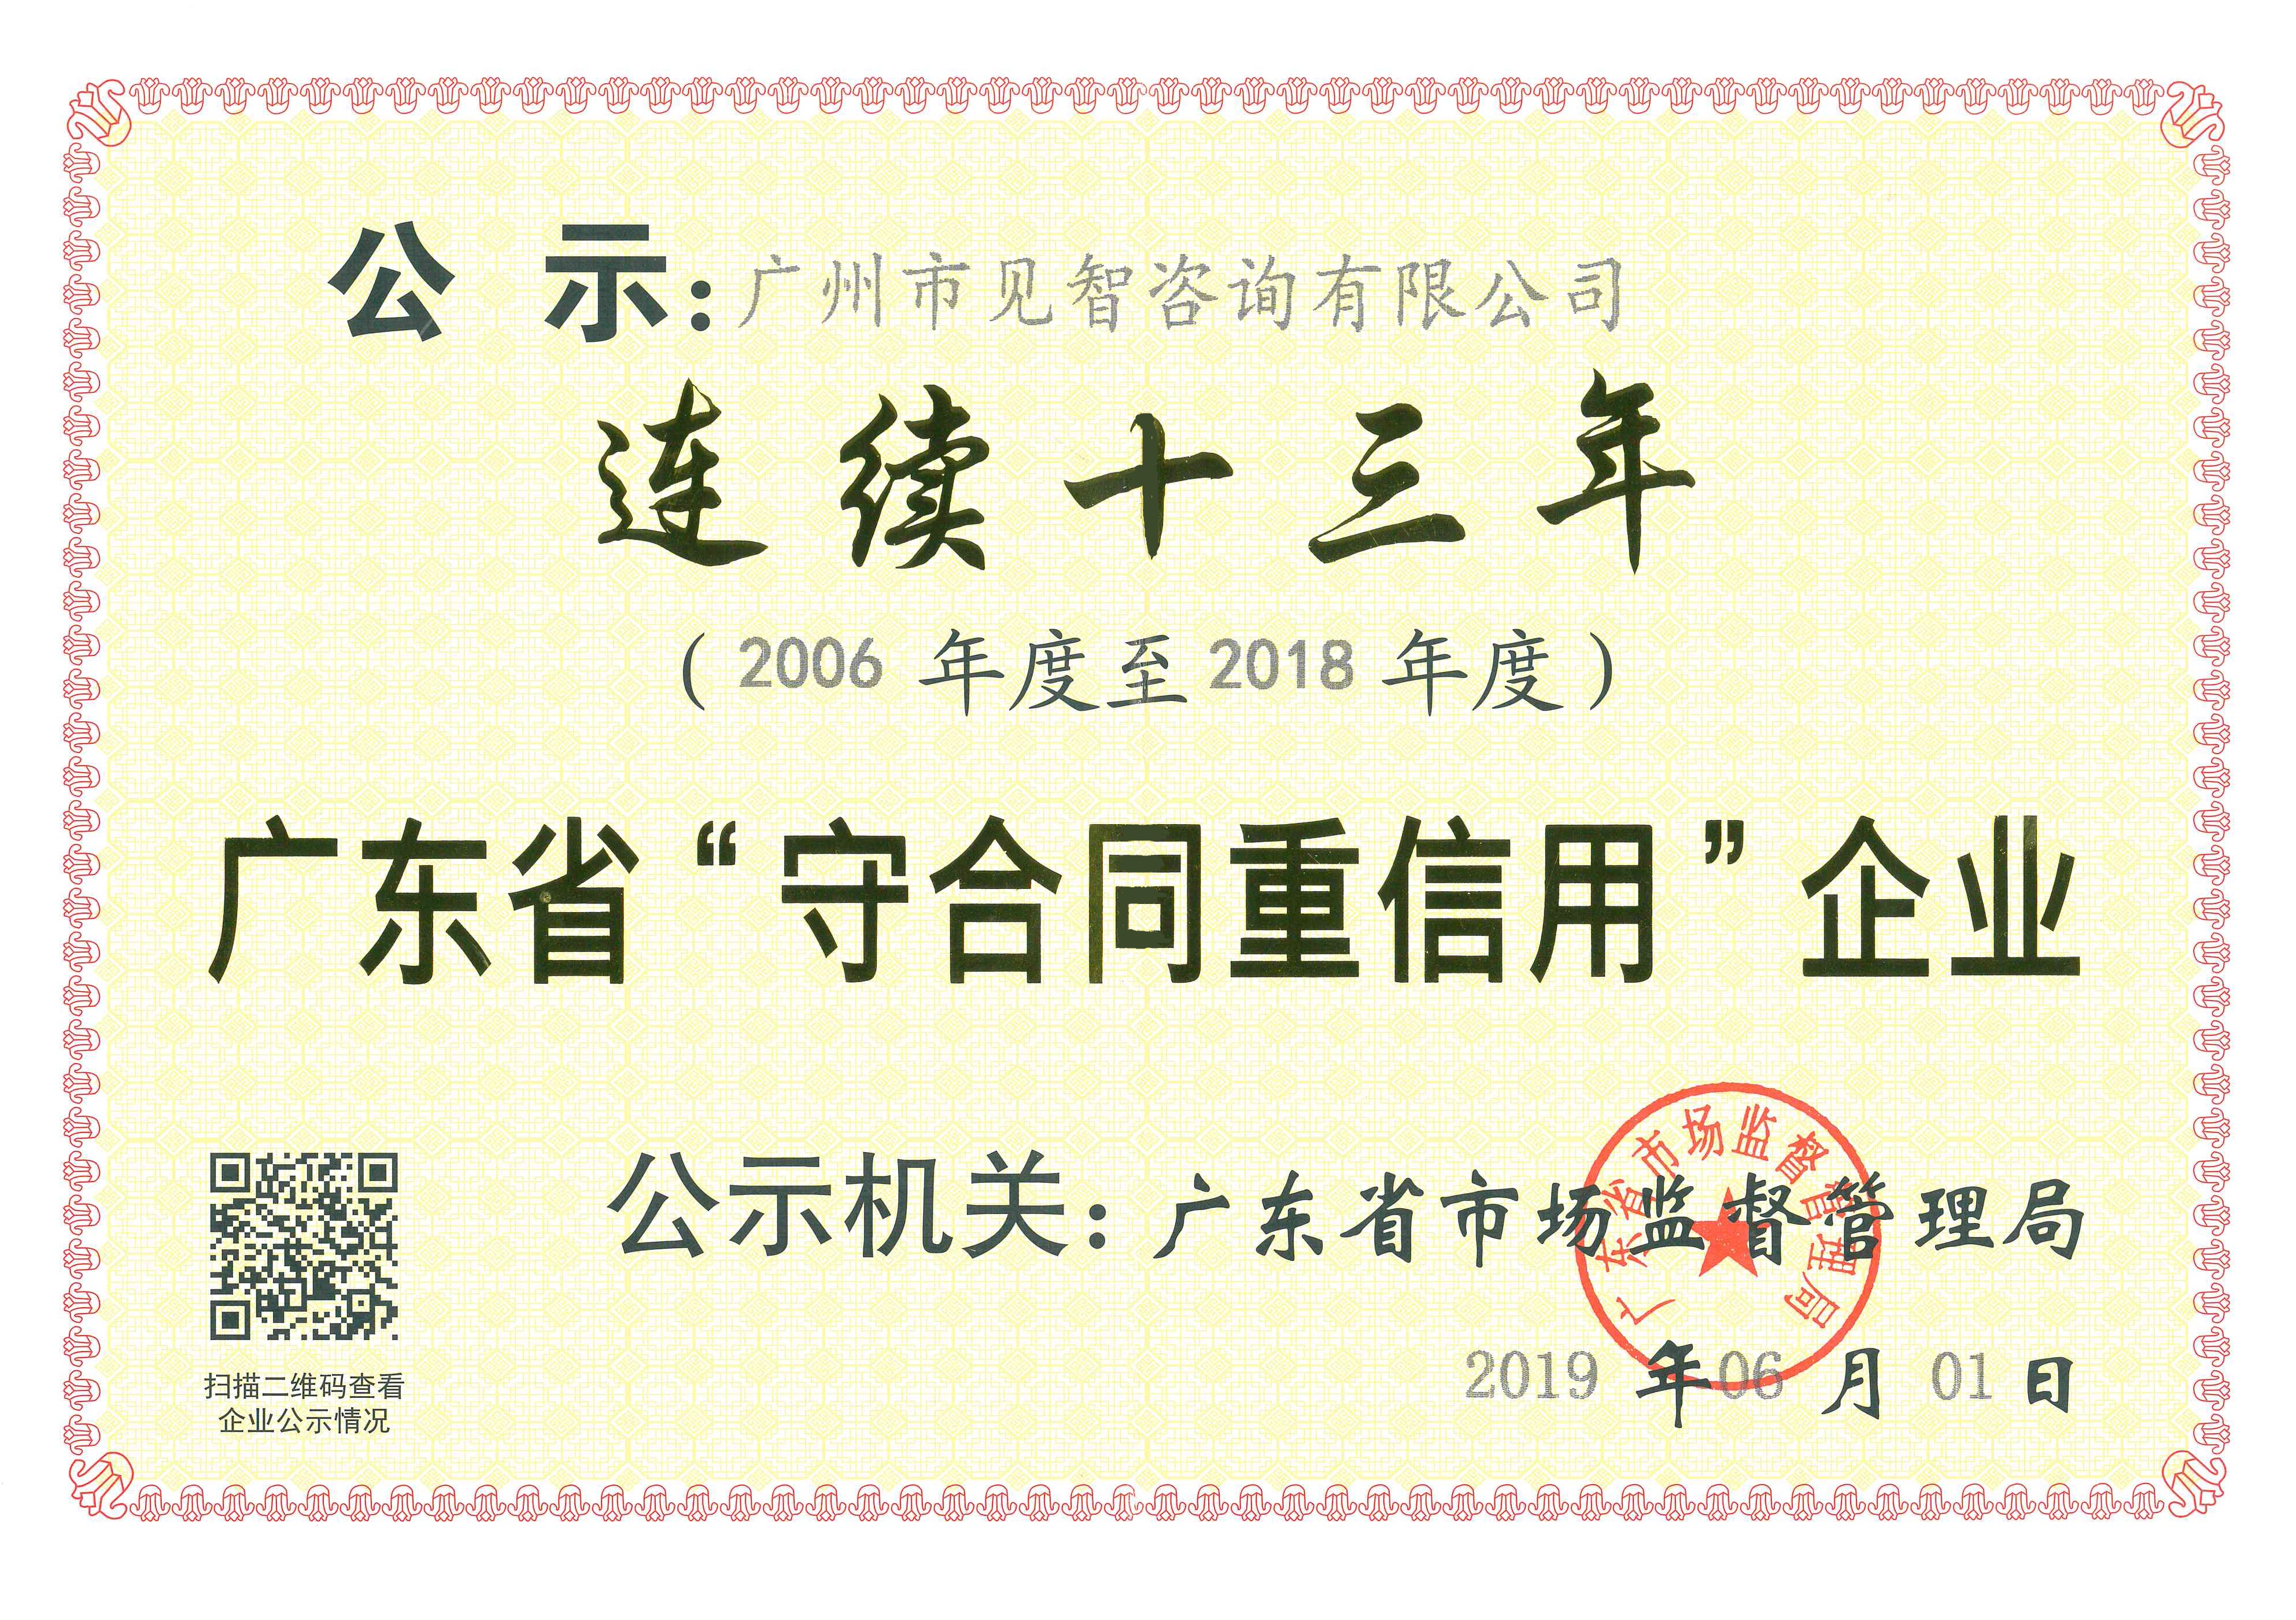 公司连续13年荣获广东省“守合同重信用”荣誉称号,66速聘